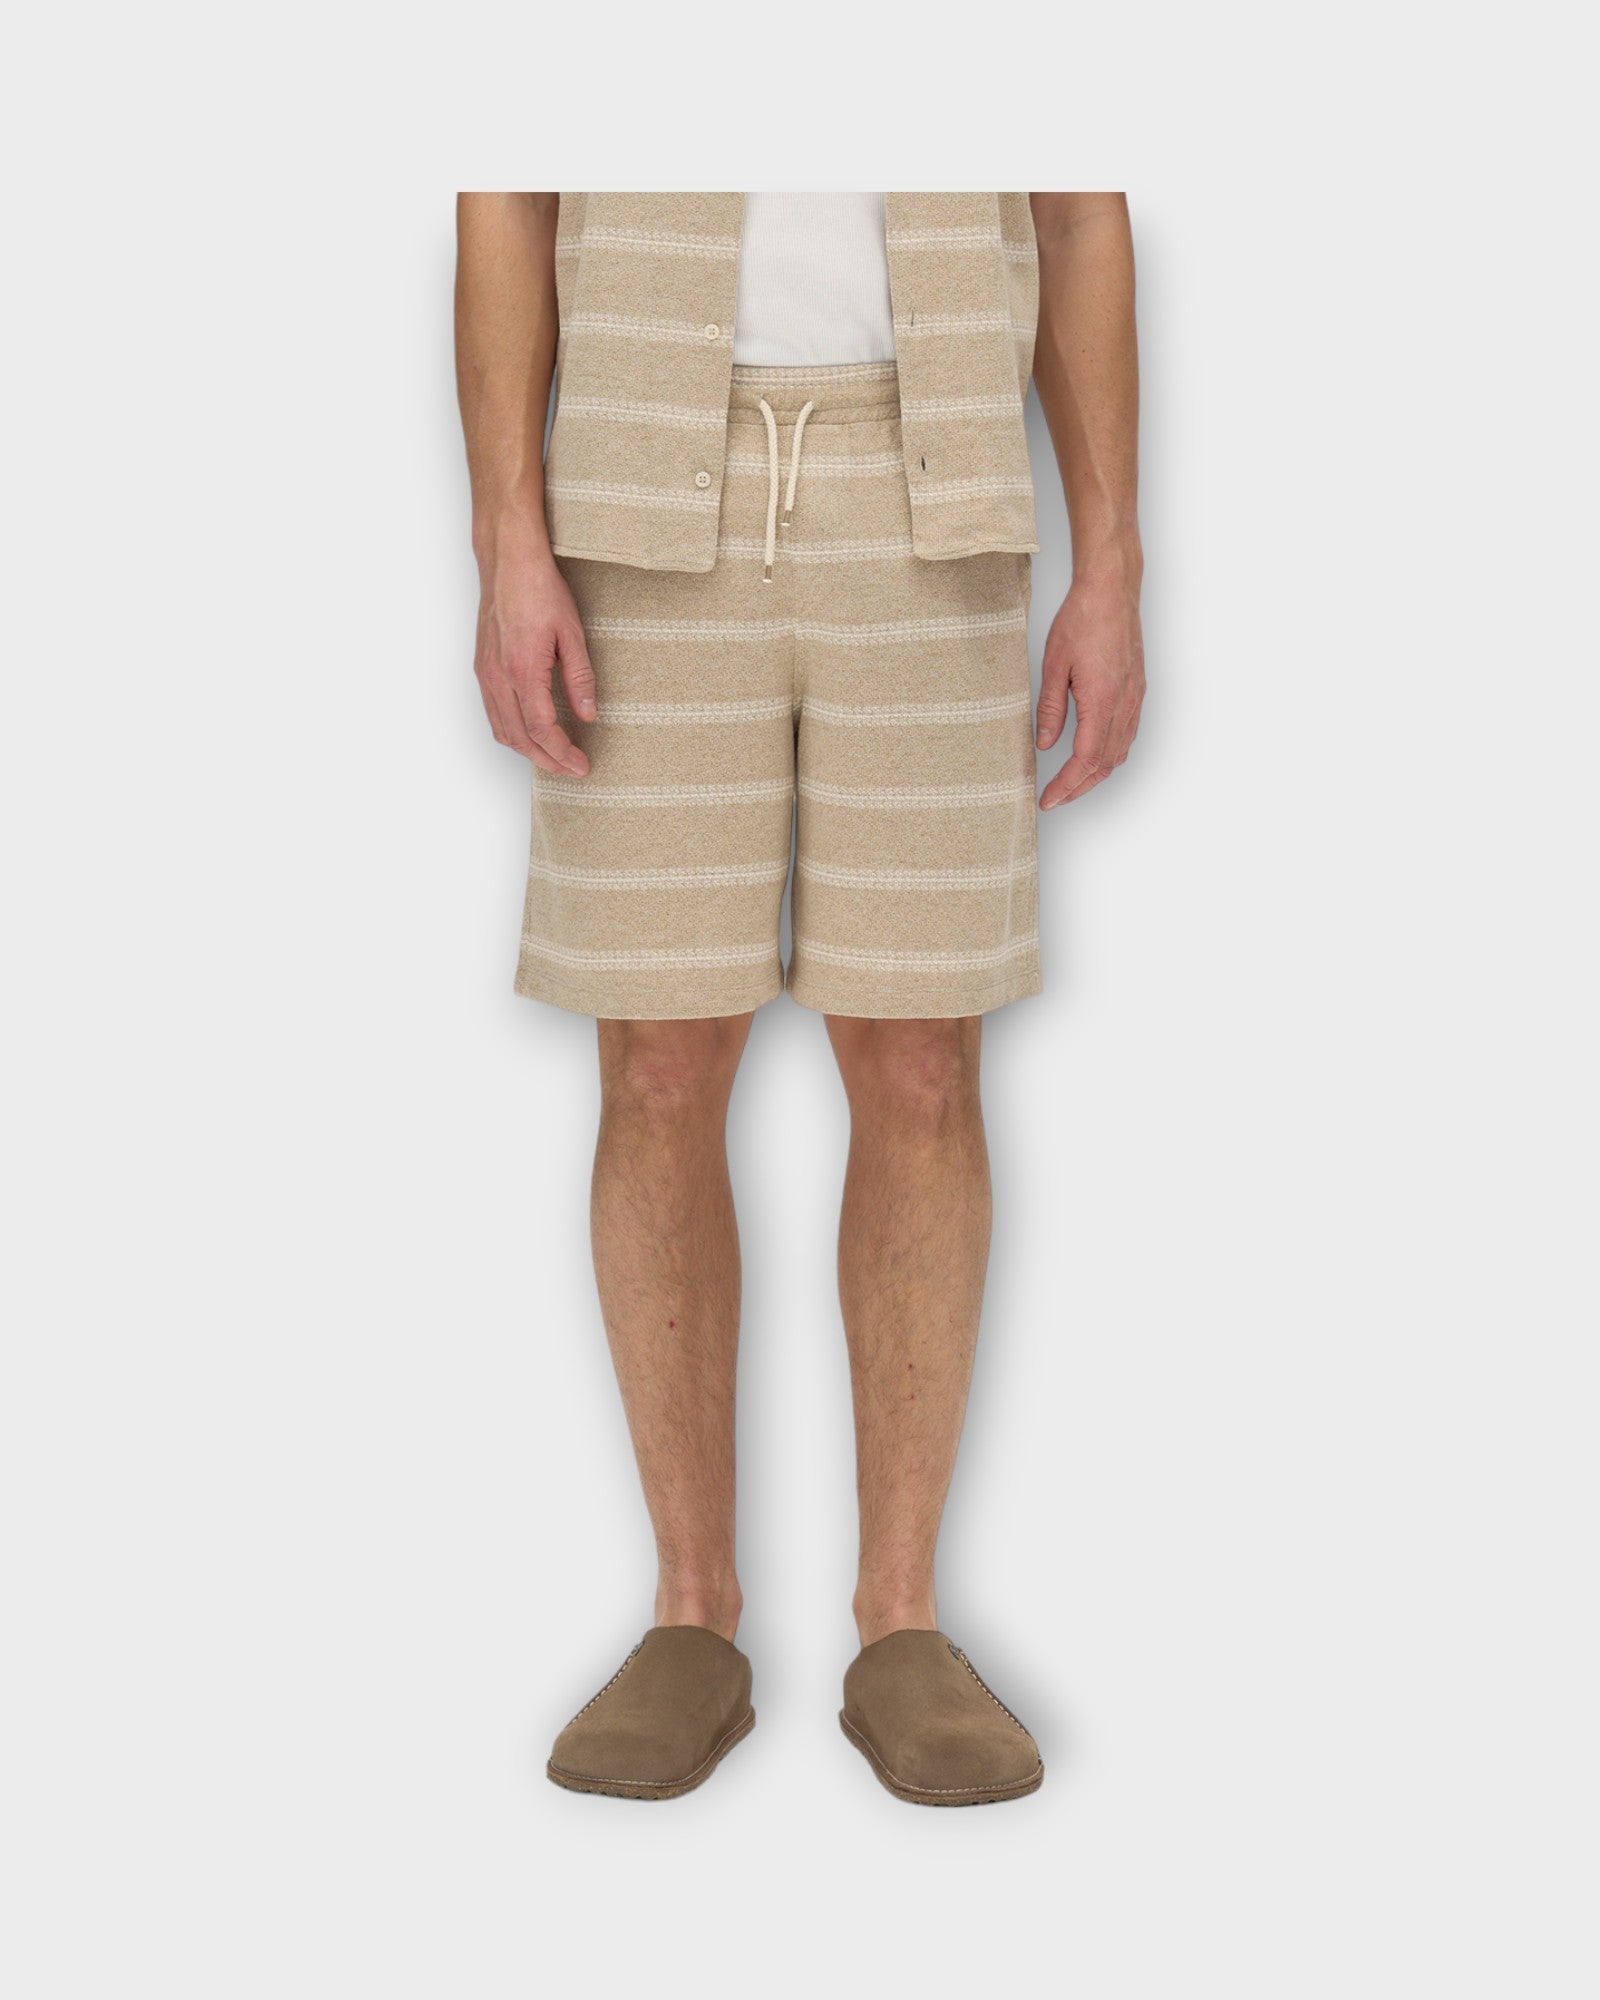 Fede Win Shorts Safari fra Gabba. Sandfarvet shorts med elastik i livet til mænd. Her set i closeup på model.